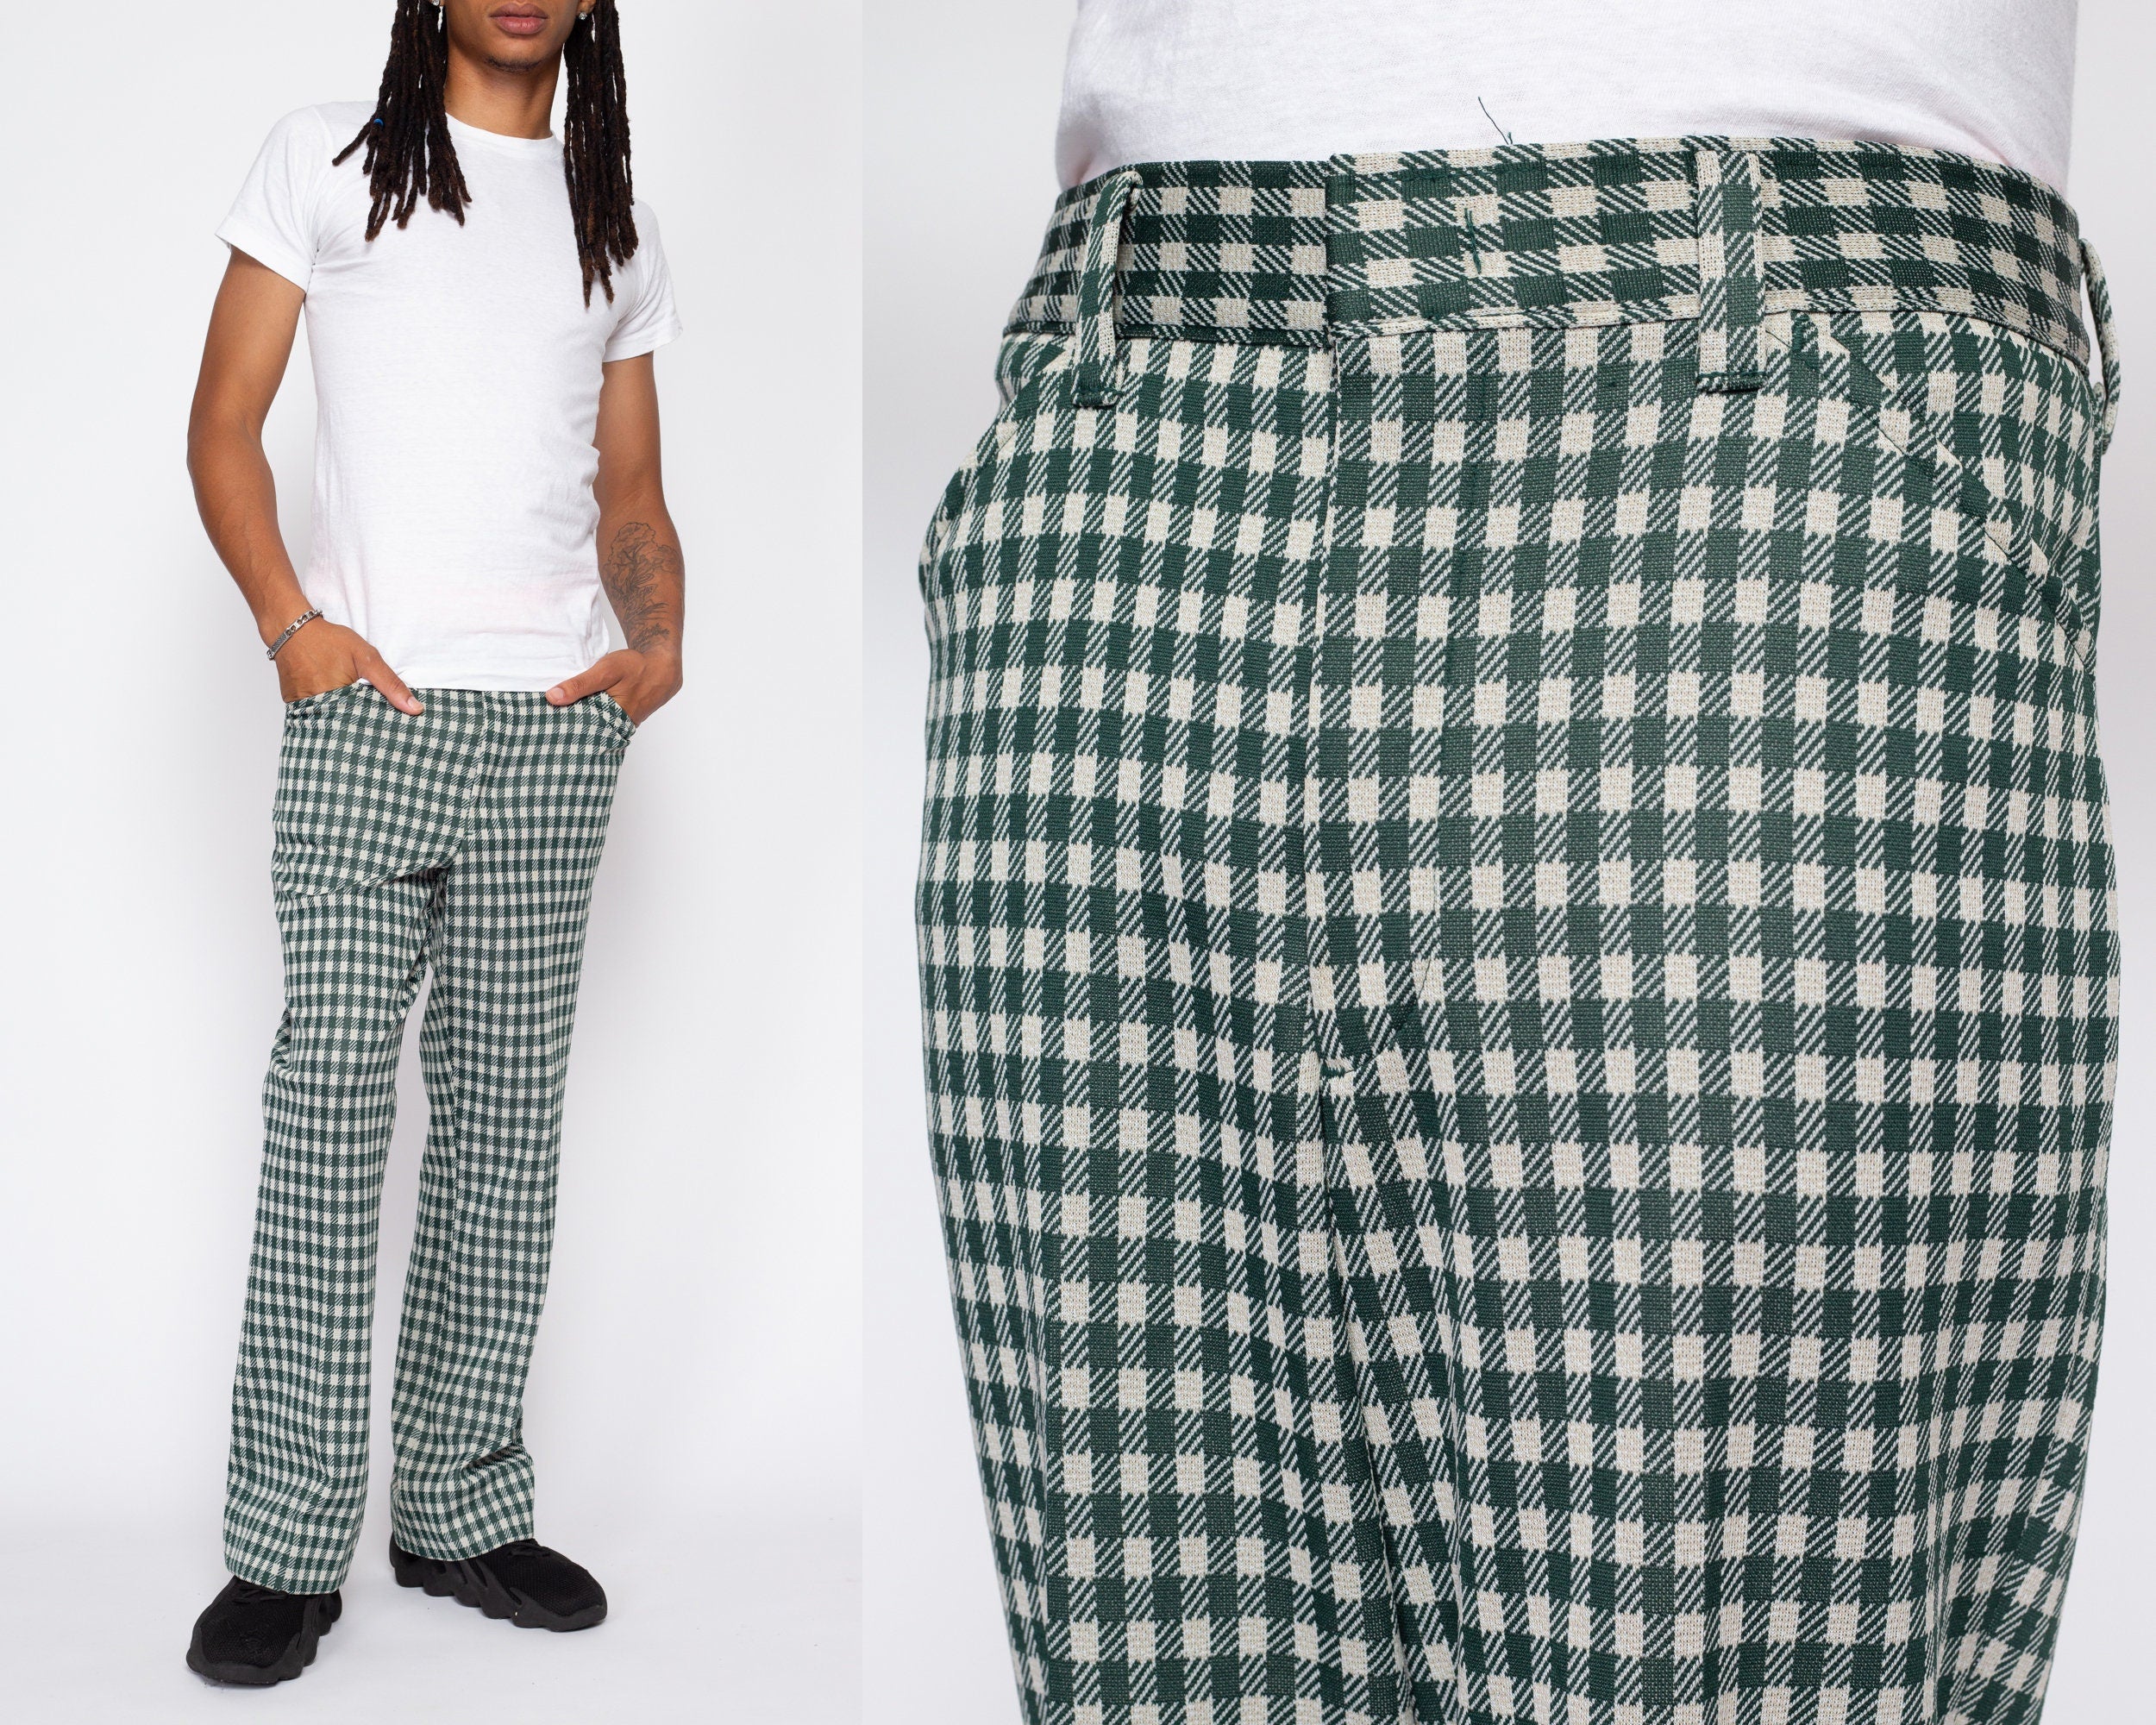 Cavani Shelby - Mens Classic Tweed Check Vintage Peaky Blinders Trousers:  Buy Online - Happy Gentleman United States